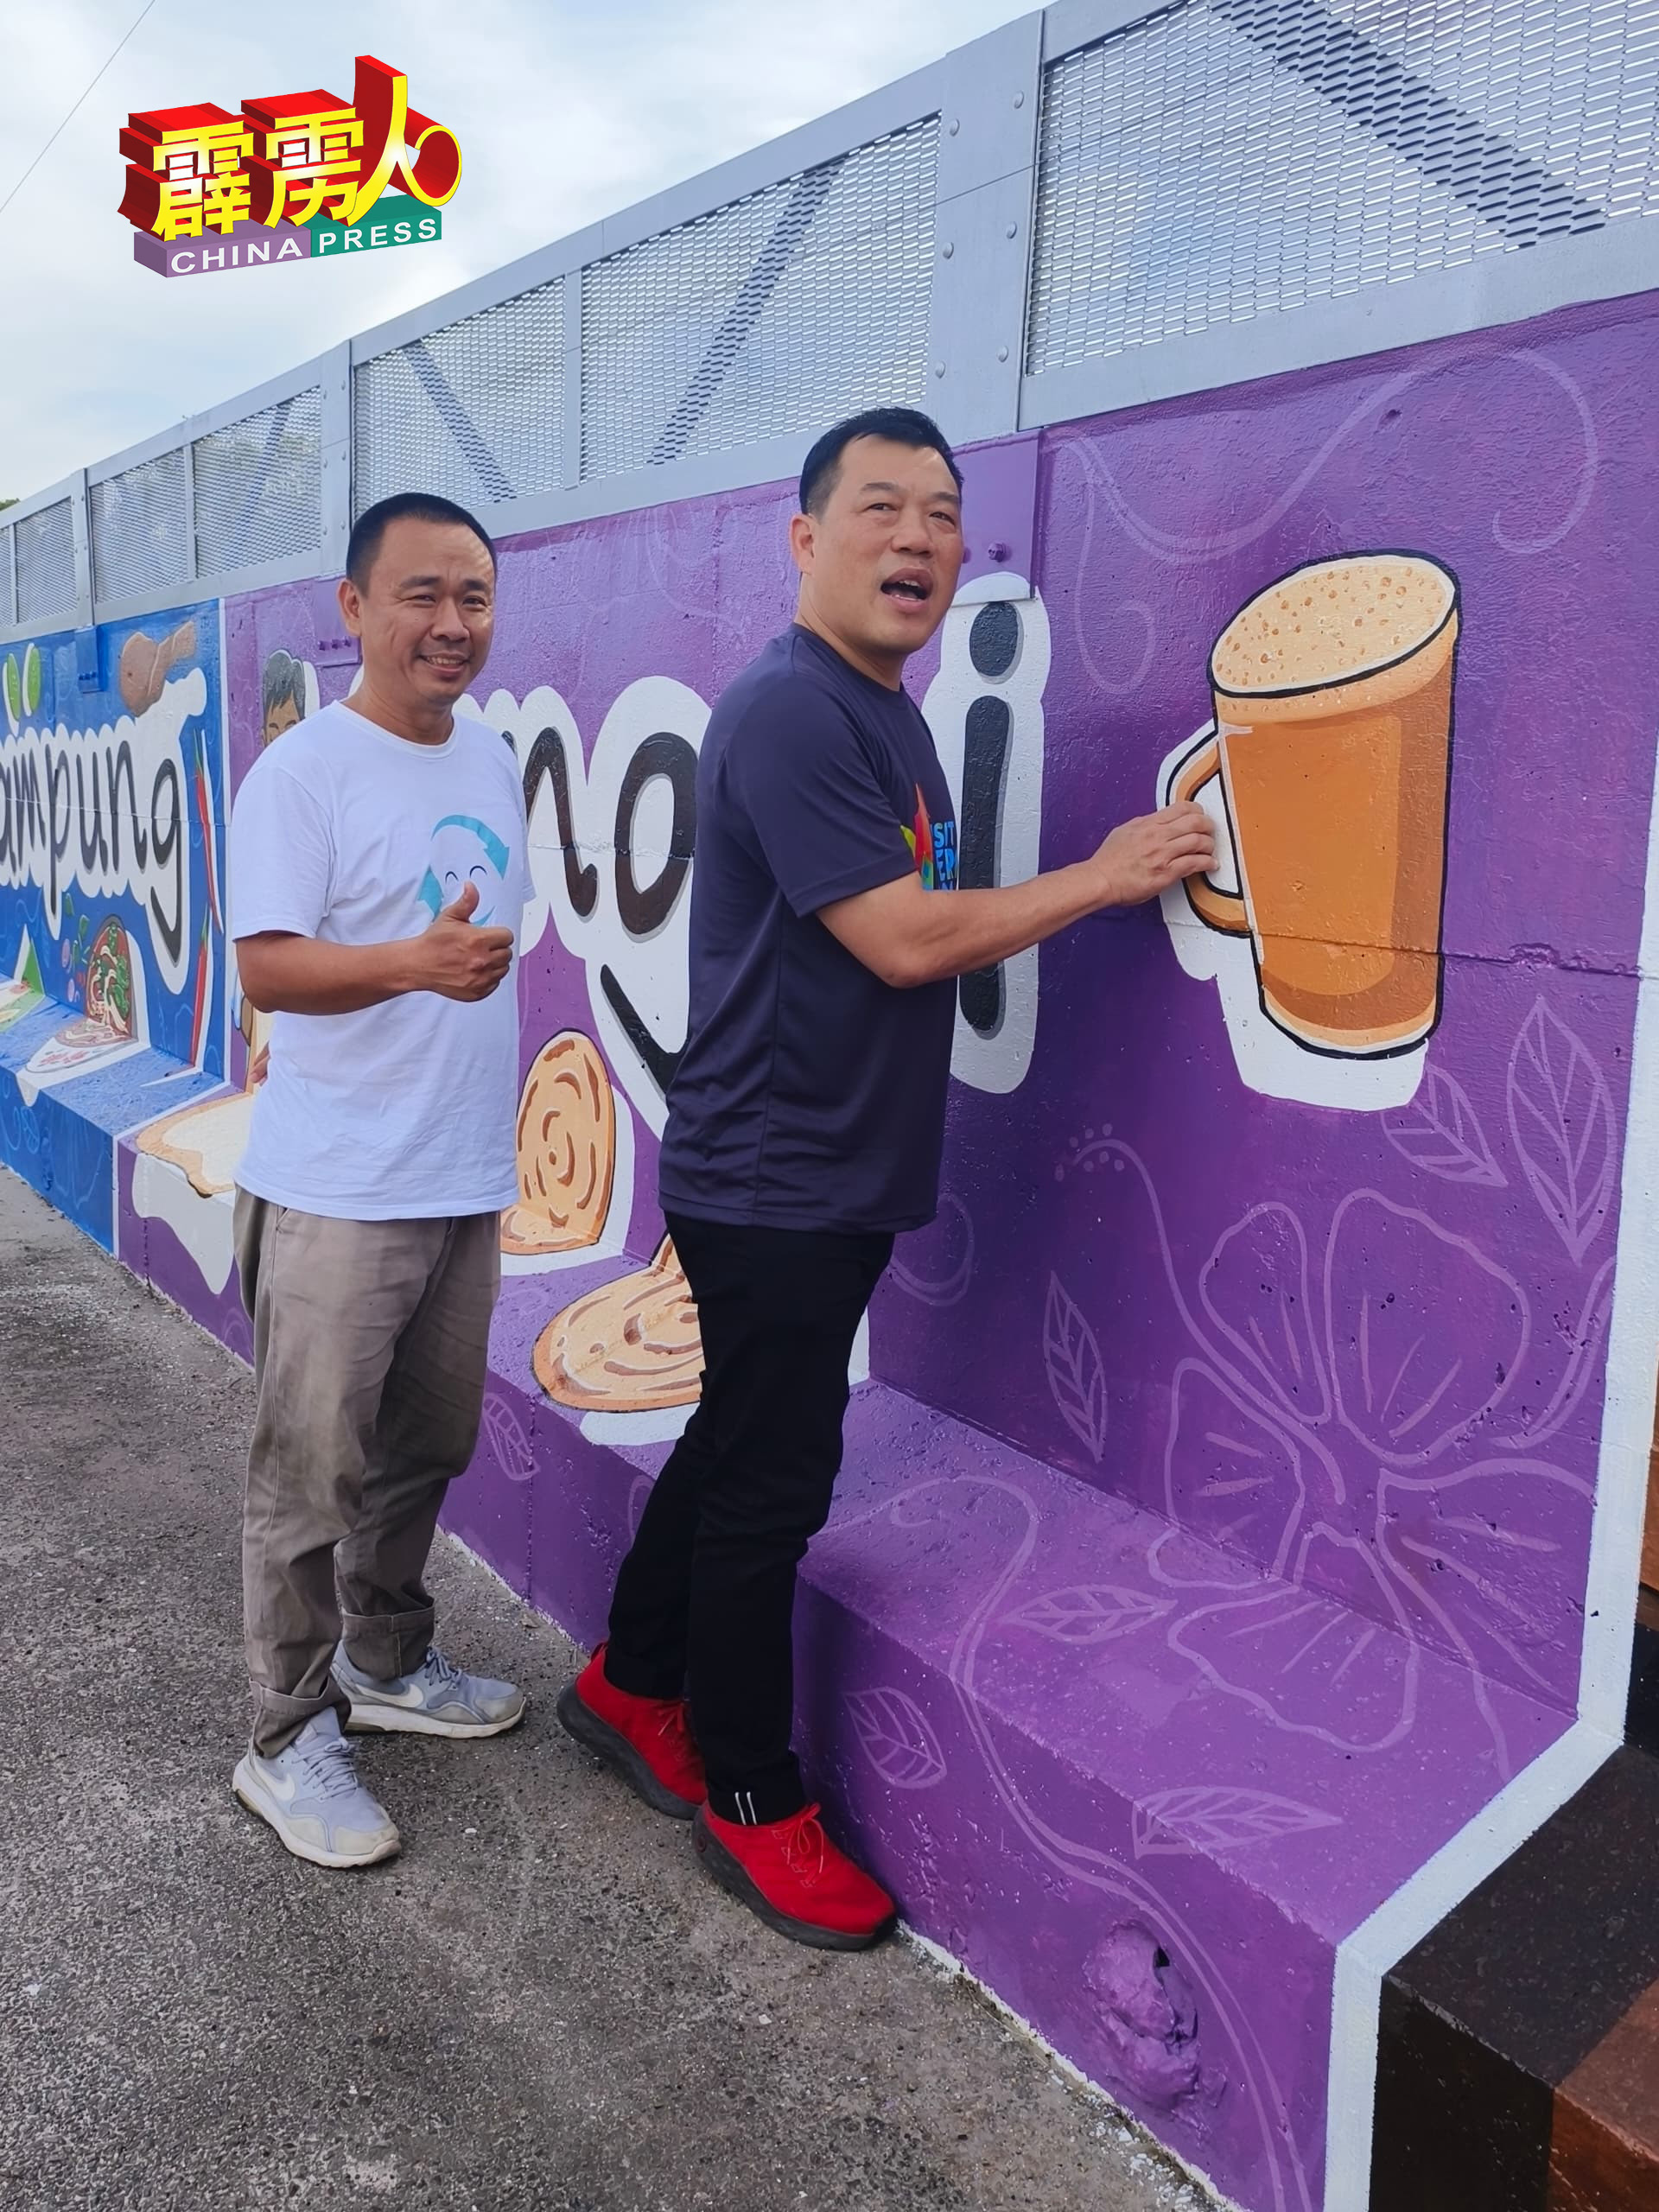 罗思义（右）作势欲拿起壁画中的“拉茶”来喝。旁为壁画家陈春耀。